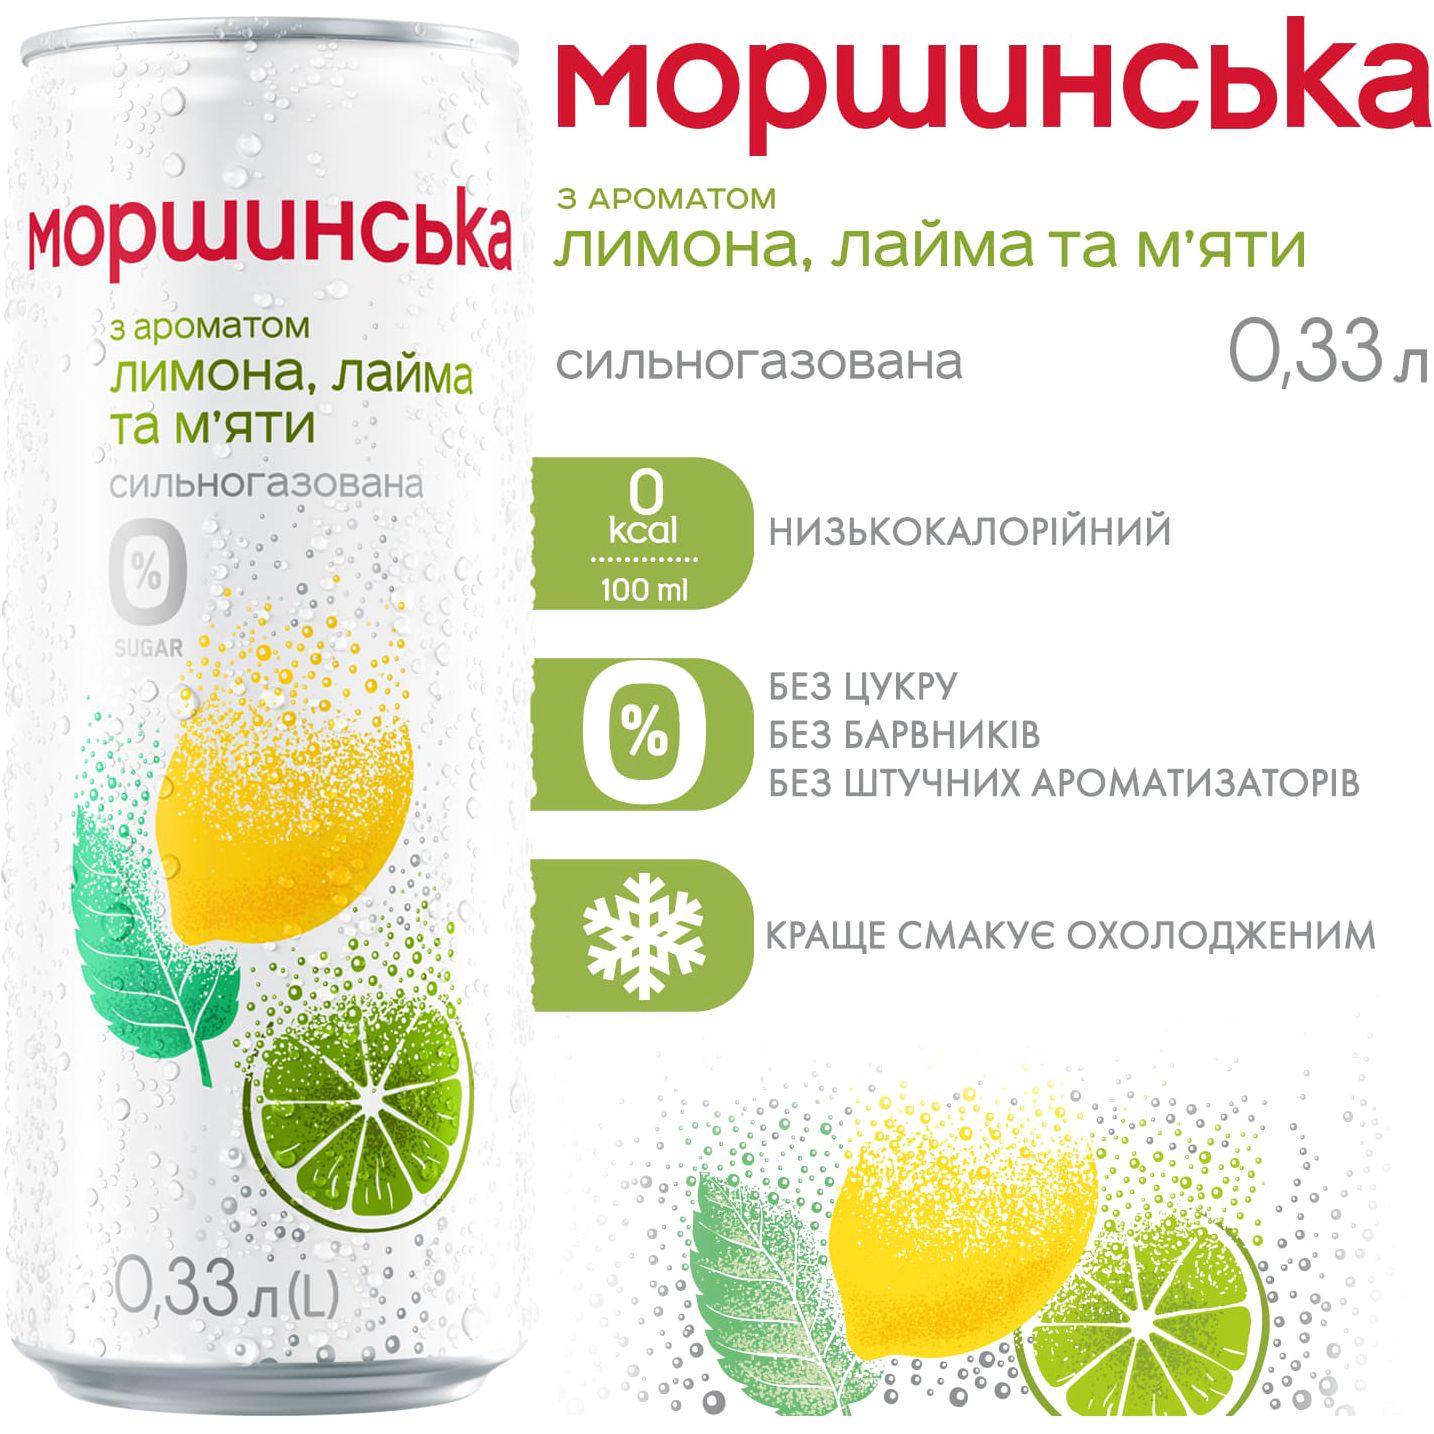 Напиток Моршинская с ароматом лимона, лайма и мяты сильногазированный 0.33 л - фото 2